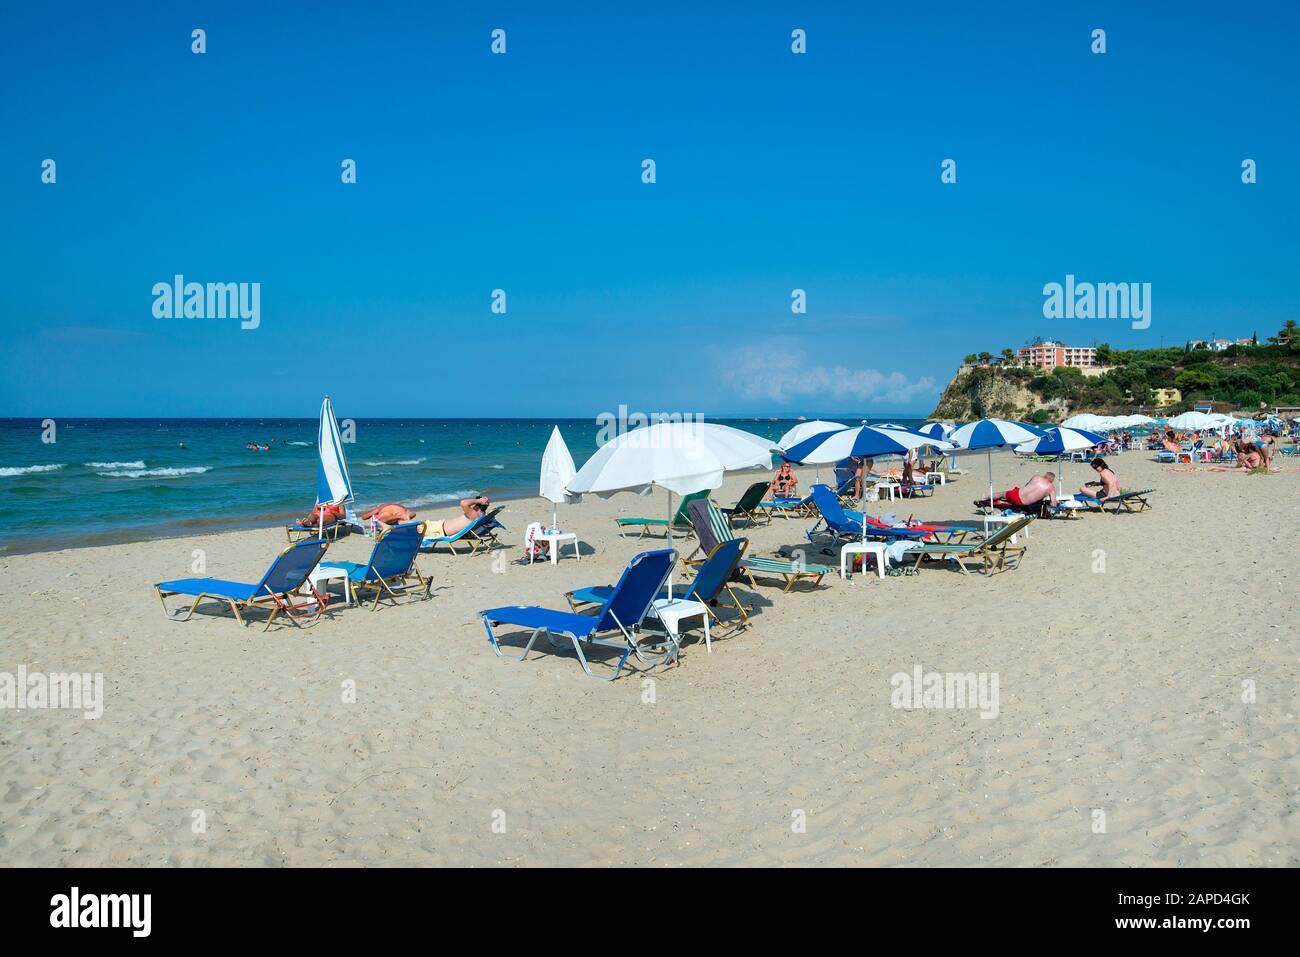 Beach at Tsilivi, Zakynthos, Greece Stock Photo